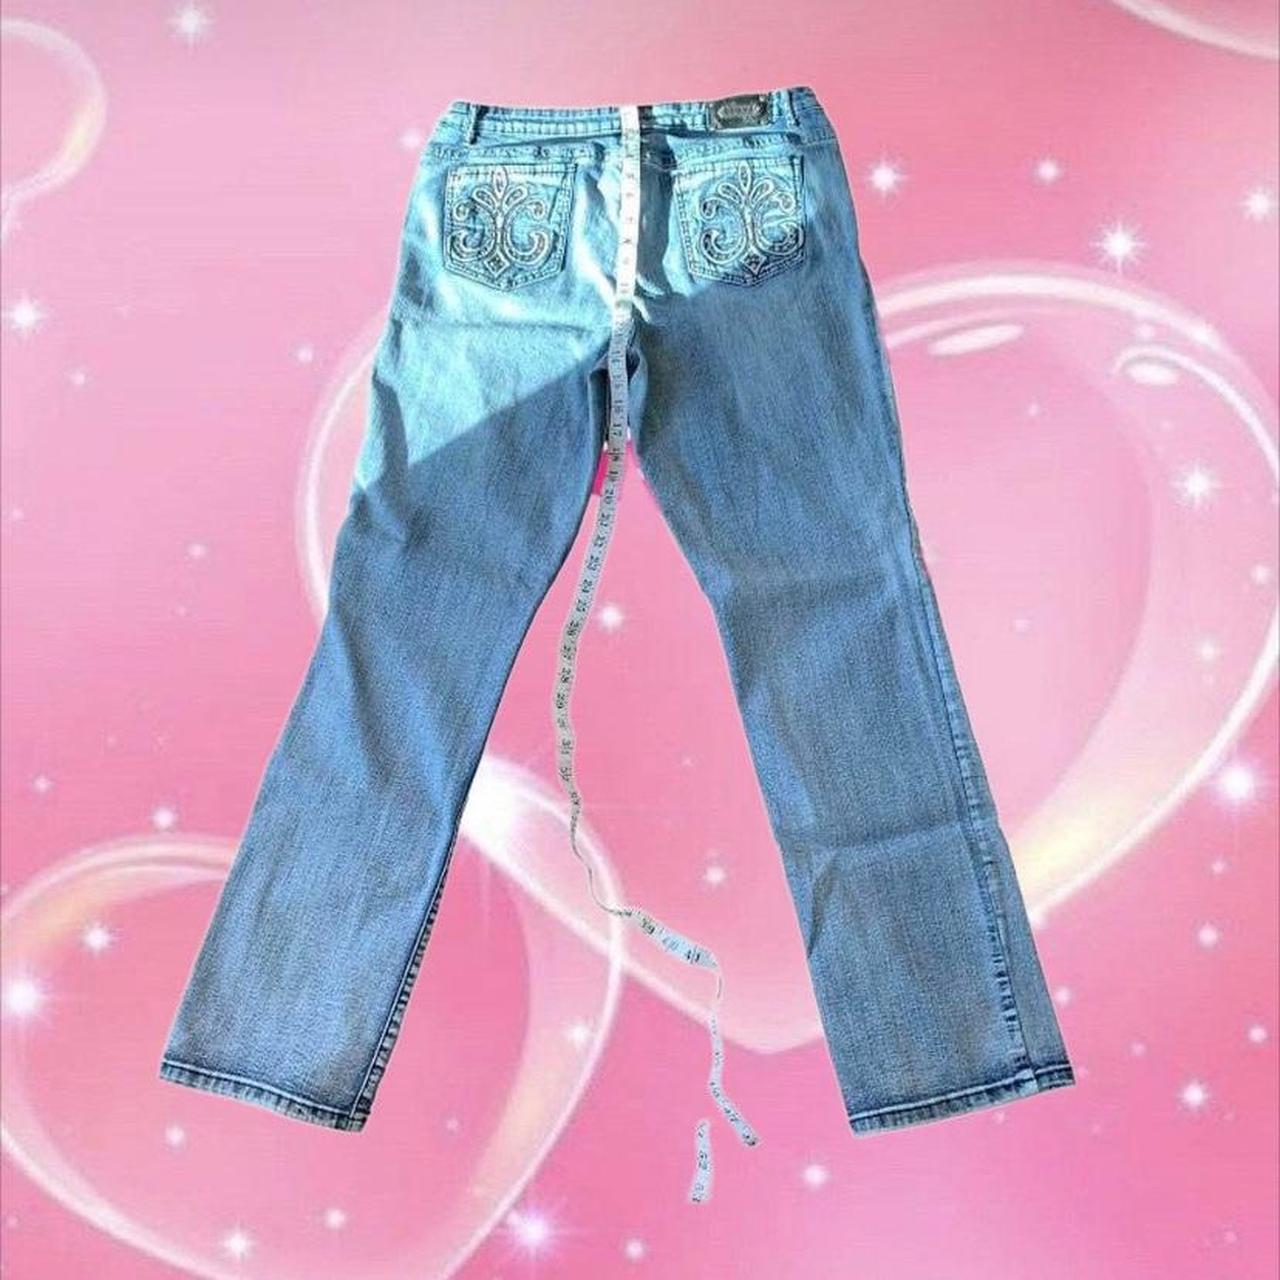 Femme Luxe Women's Blue Jeans (4)